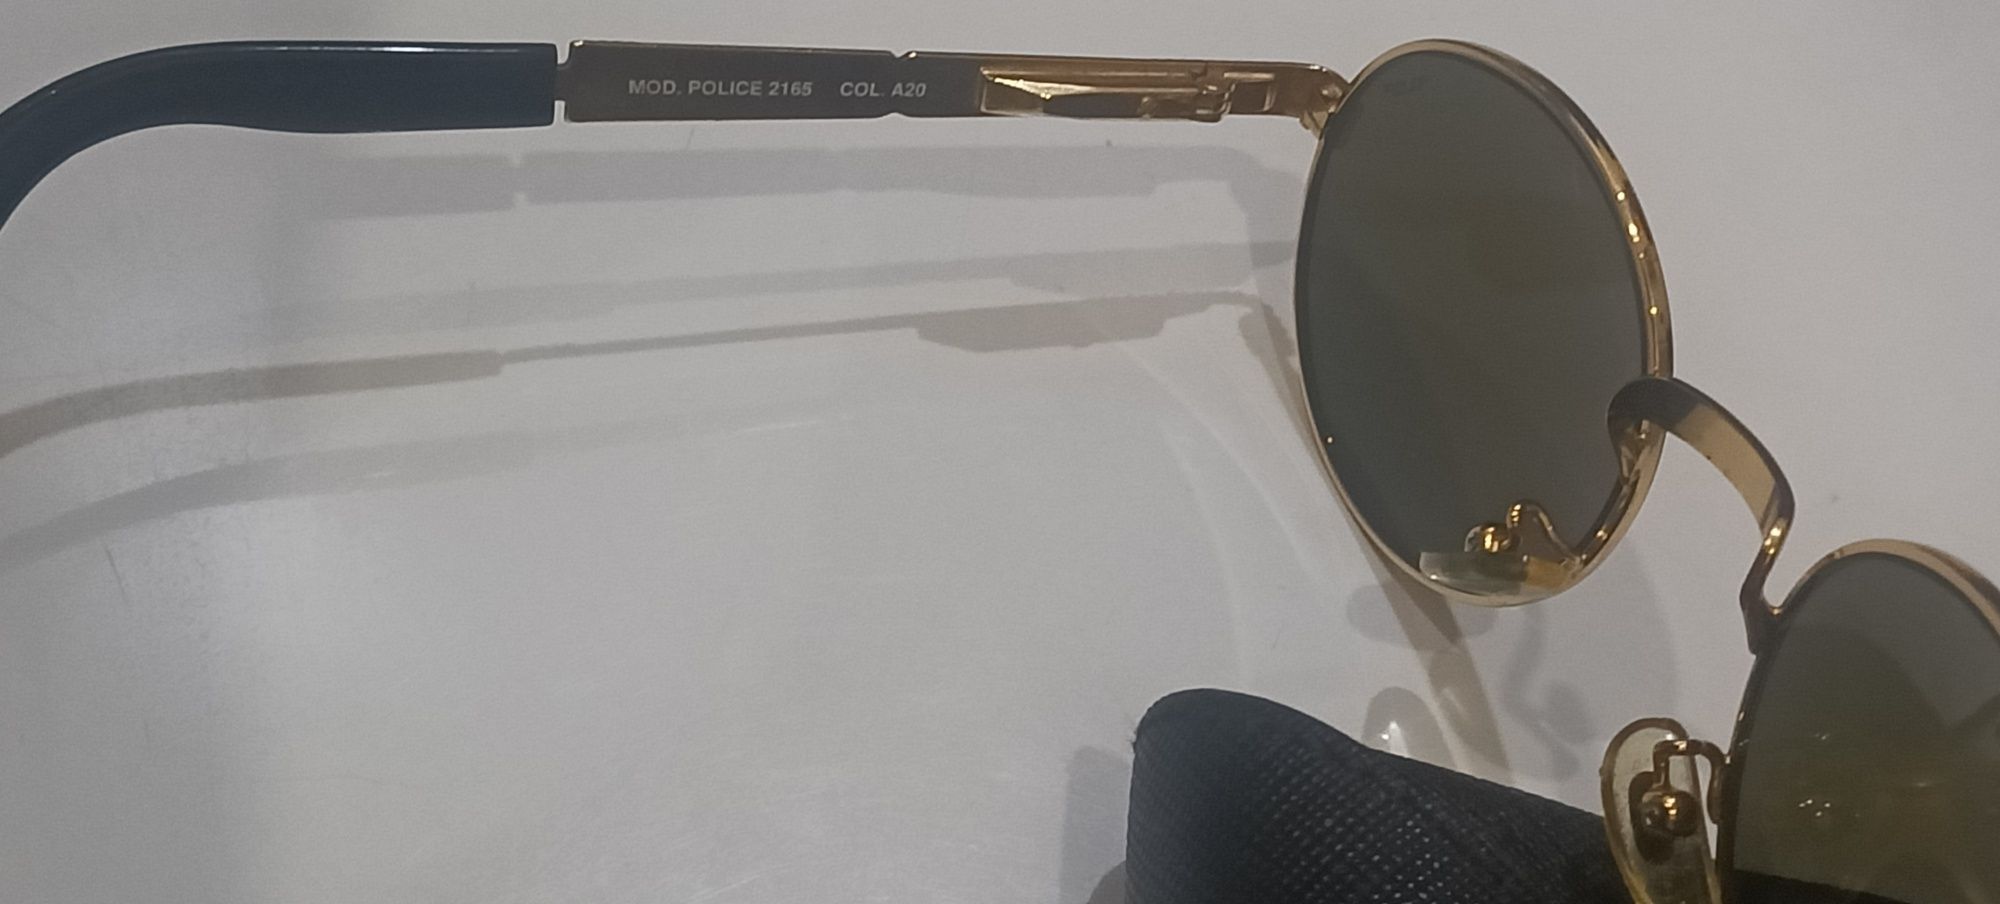 Óculos de sol (Police Vintage) de metal dourado com estojo.